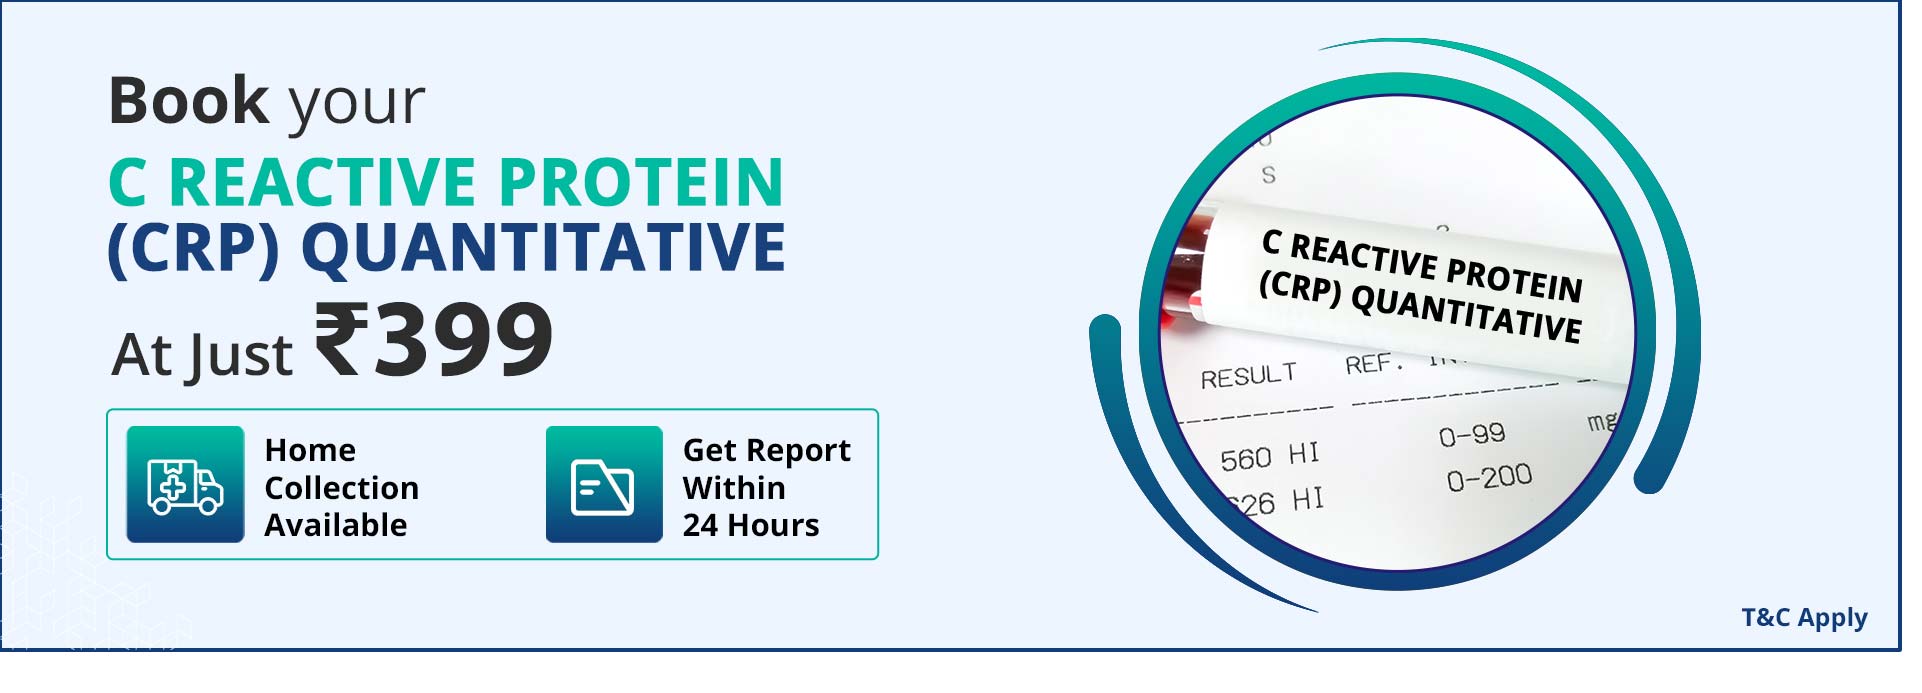 C Reactive Protein (CRP) Quantitative